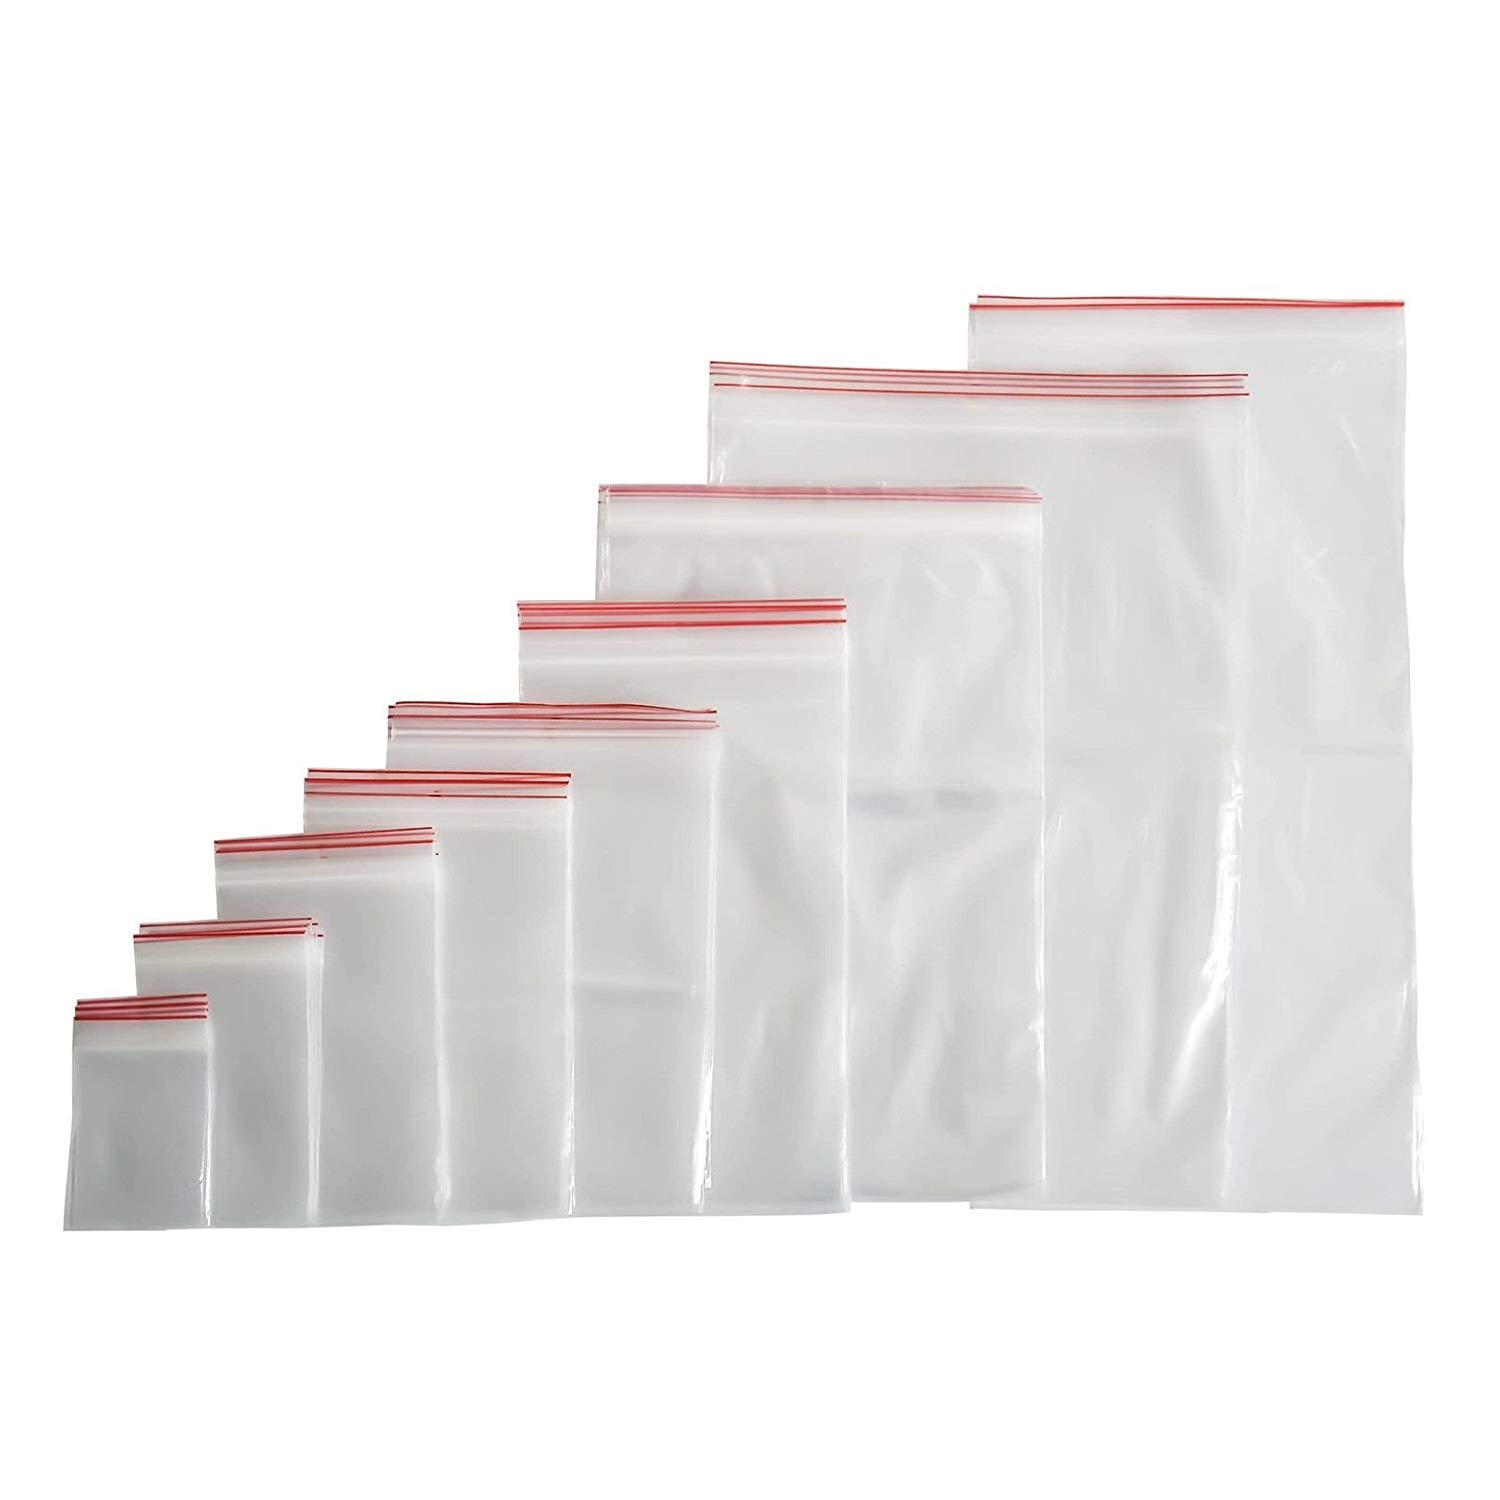 100 sacchetti con chiusura a pressione, in plastica, con chiusura lampo (40 misure a scelta), 4x6, farbenlos, 1